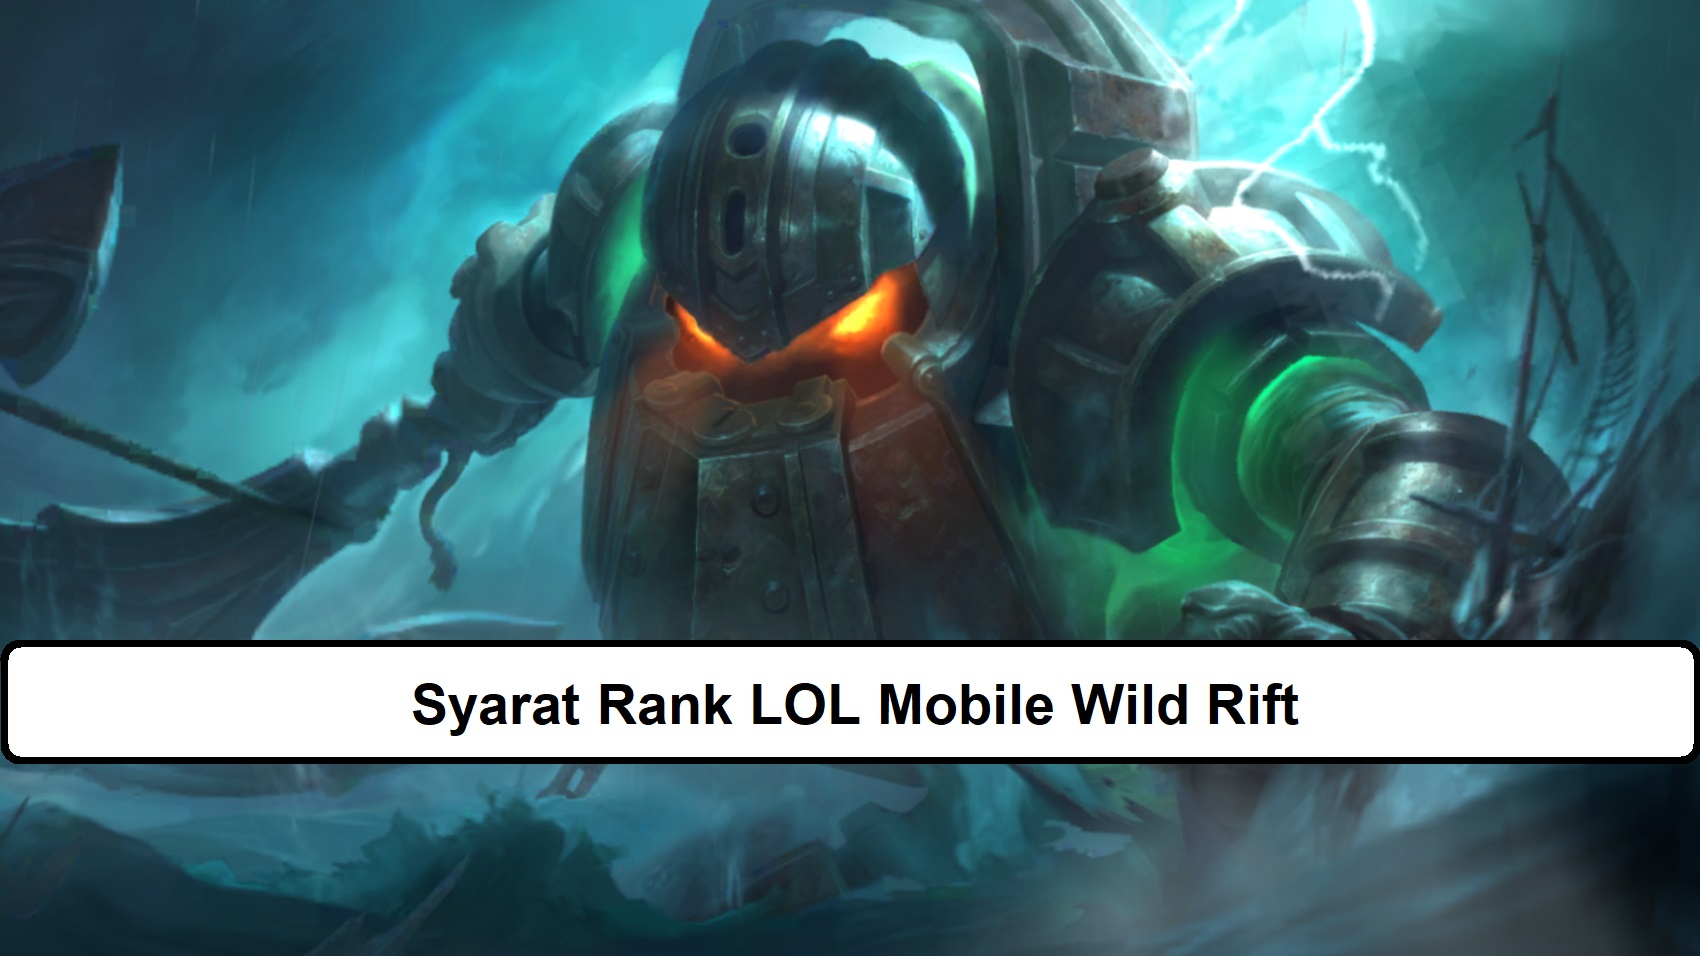 Syarat Rank LOL Mobile Wild Rift